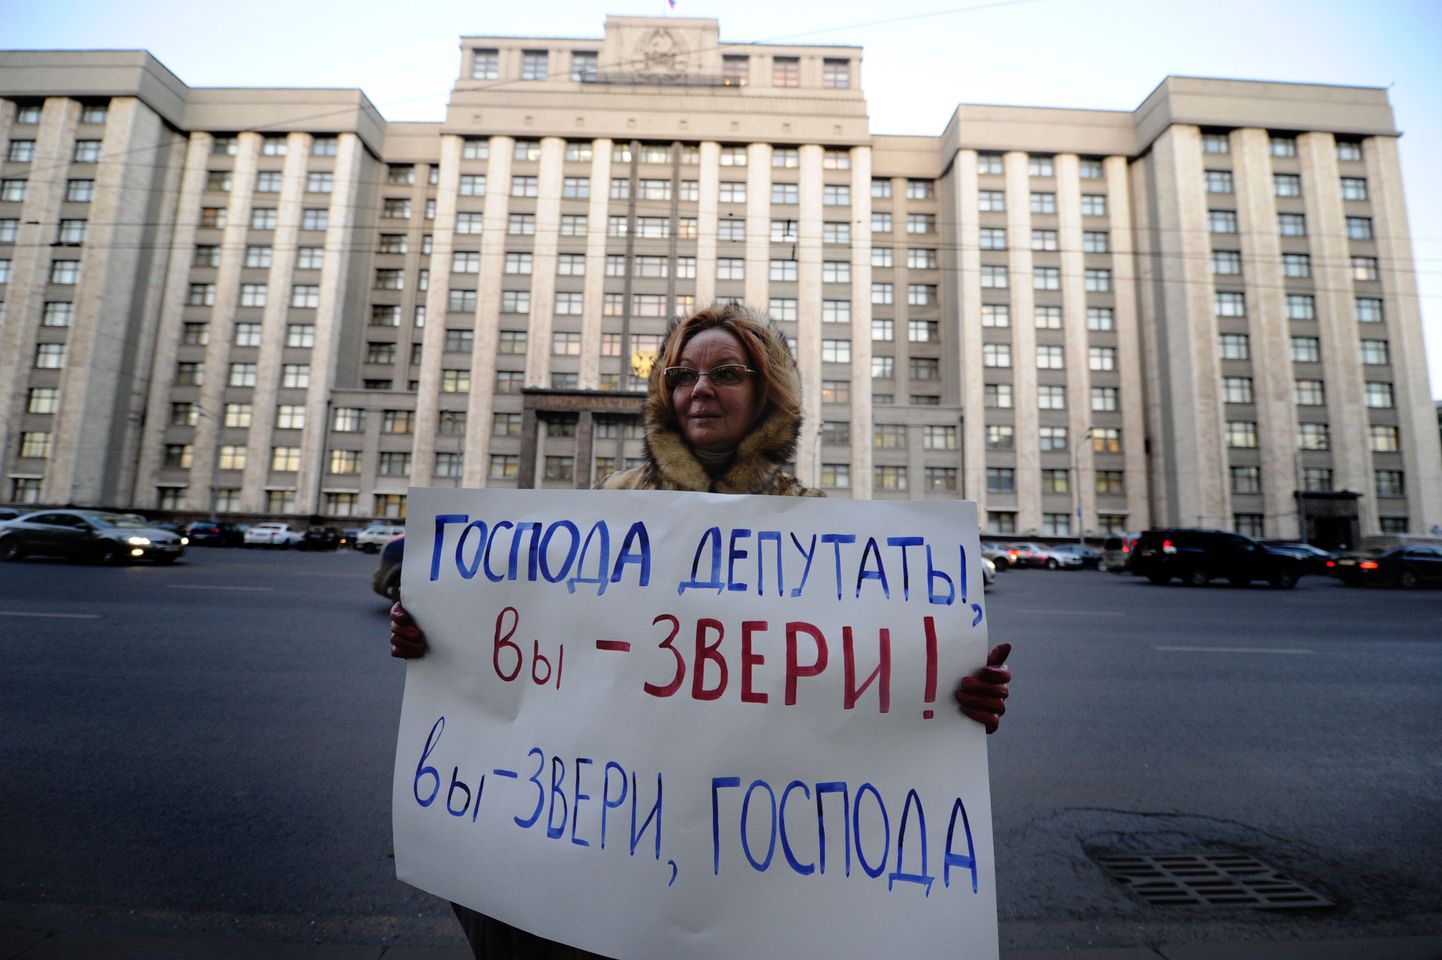 Eelnõu-vastane meeleavaldus Vene riigiduuma hoone juures. Plakatil seisab: «Härrad parlamendisaadikud, te olete loomad! Te olete loomad, härrad».